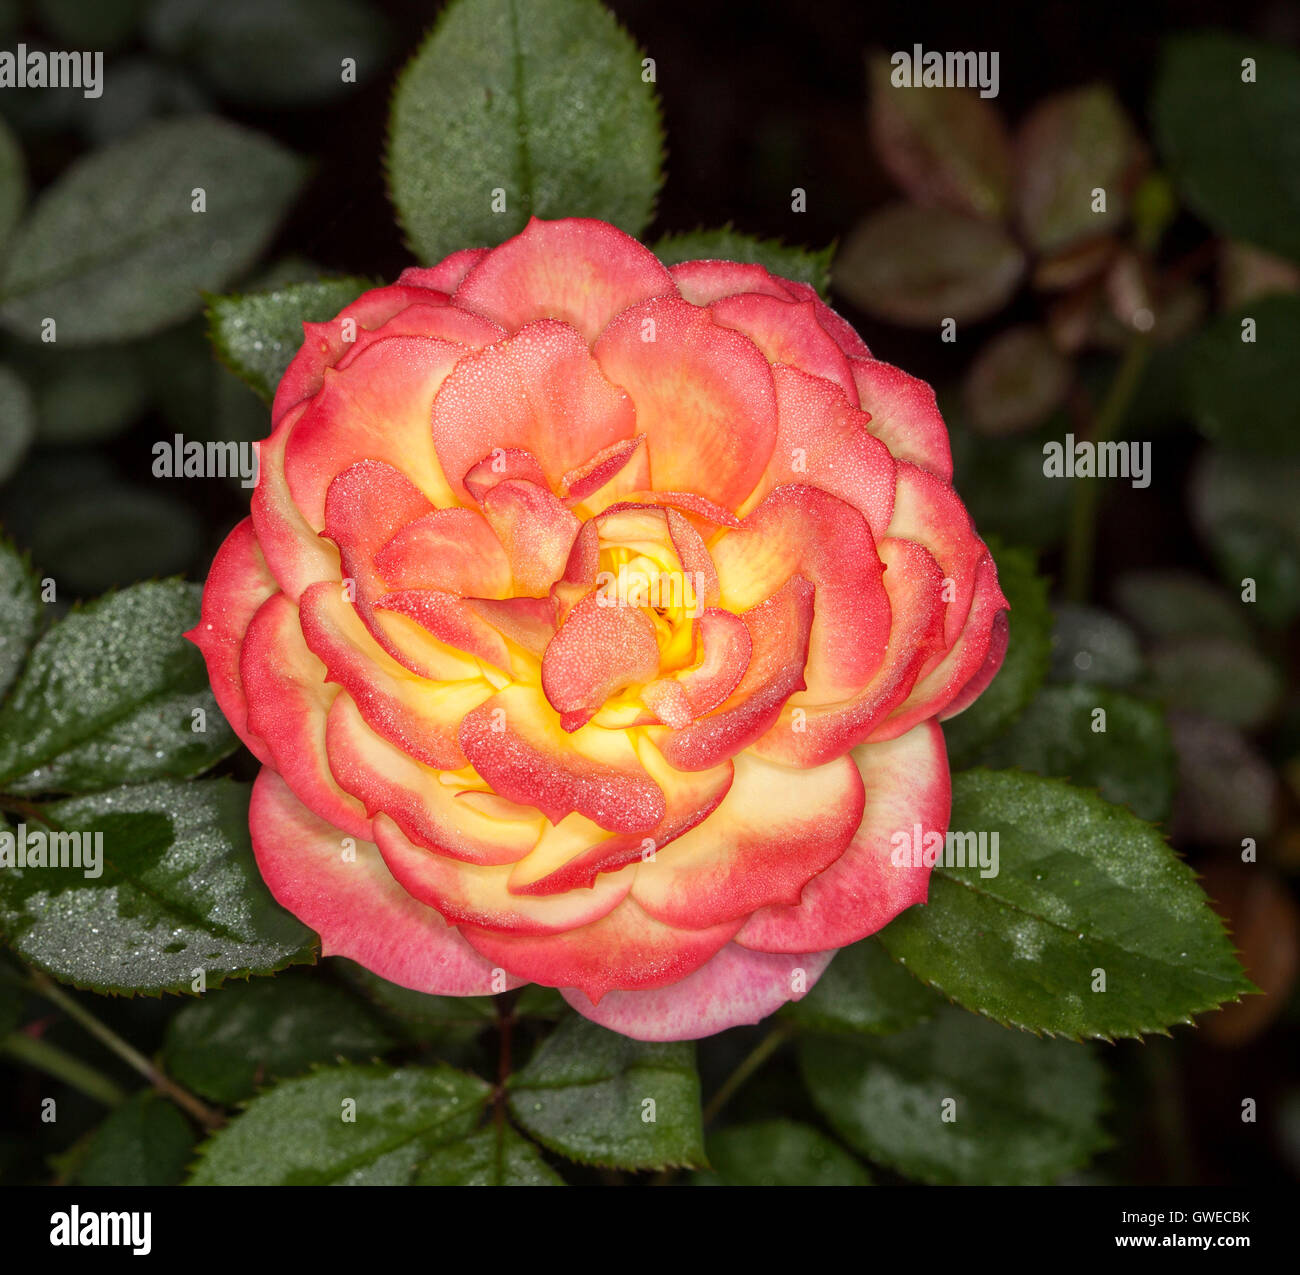 Spettacolare il rosso e il giallo fiore e foglie di colore verde scuro di un insolito camaleonte rosa con gocce di pioggia sulla petali di fiori & foglie Foto Stock